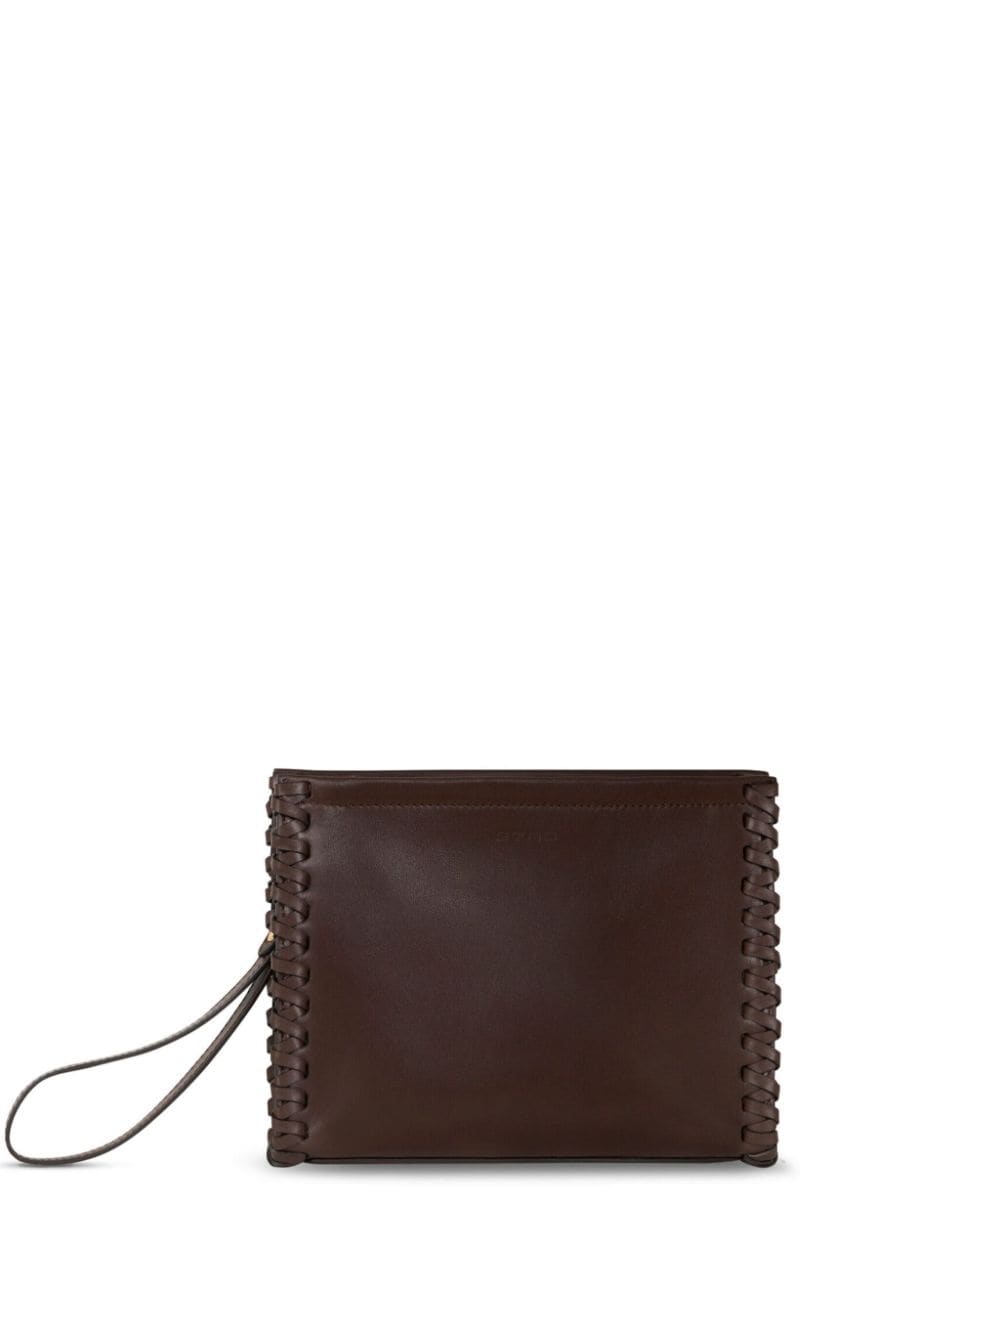 ETRO medium braided leather clutch bag - Brown von ETRO